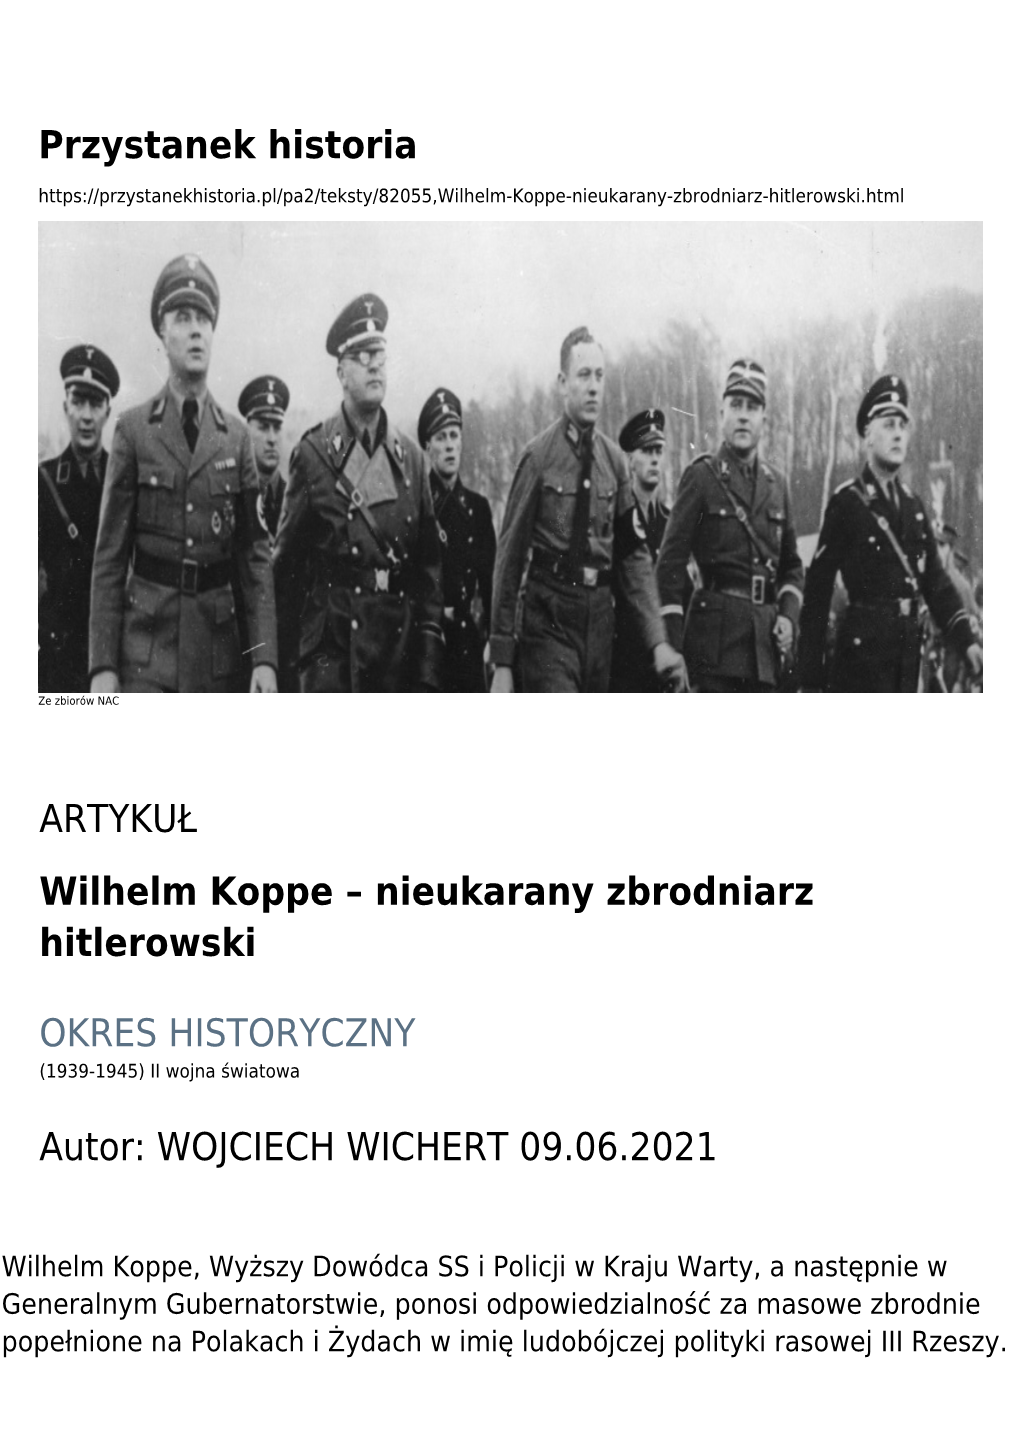 Wilhelm Koppe – Nieukarany Zbrodniarz Hitlerowski